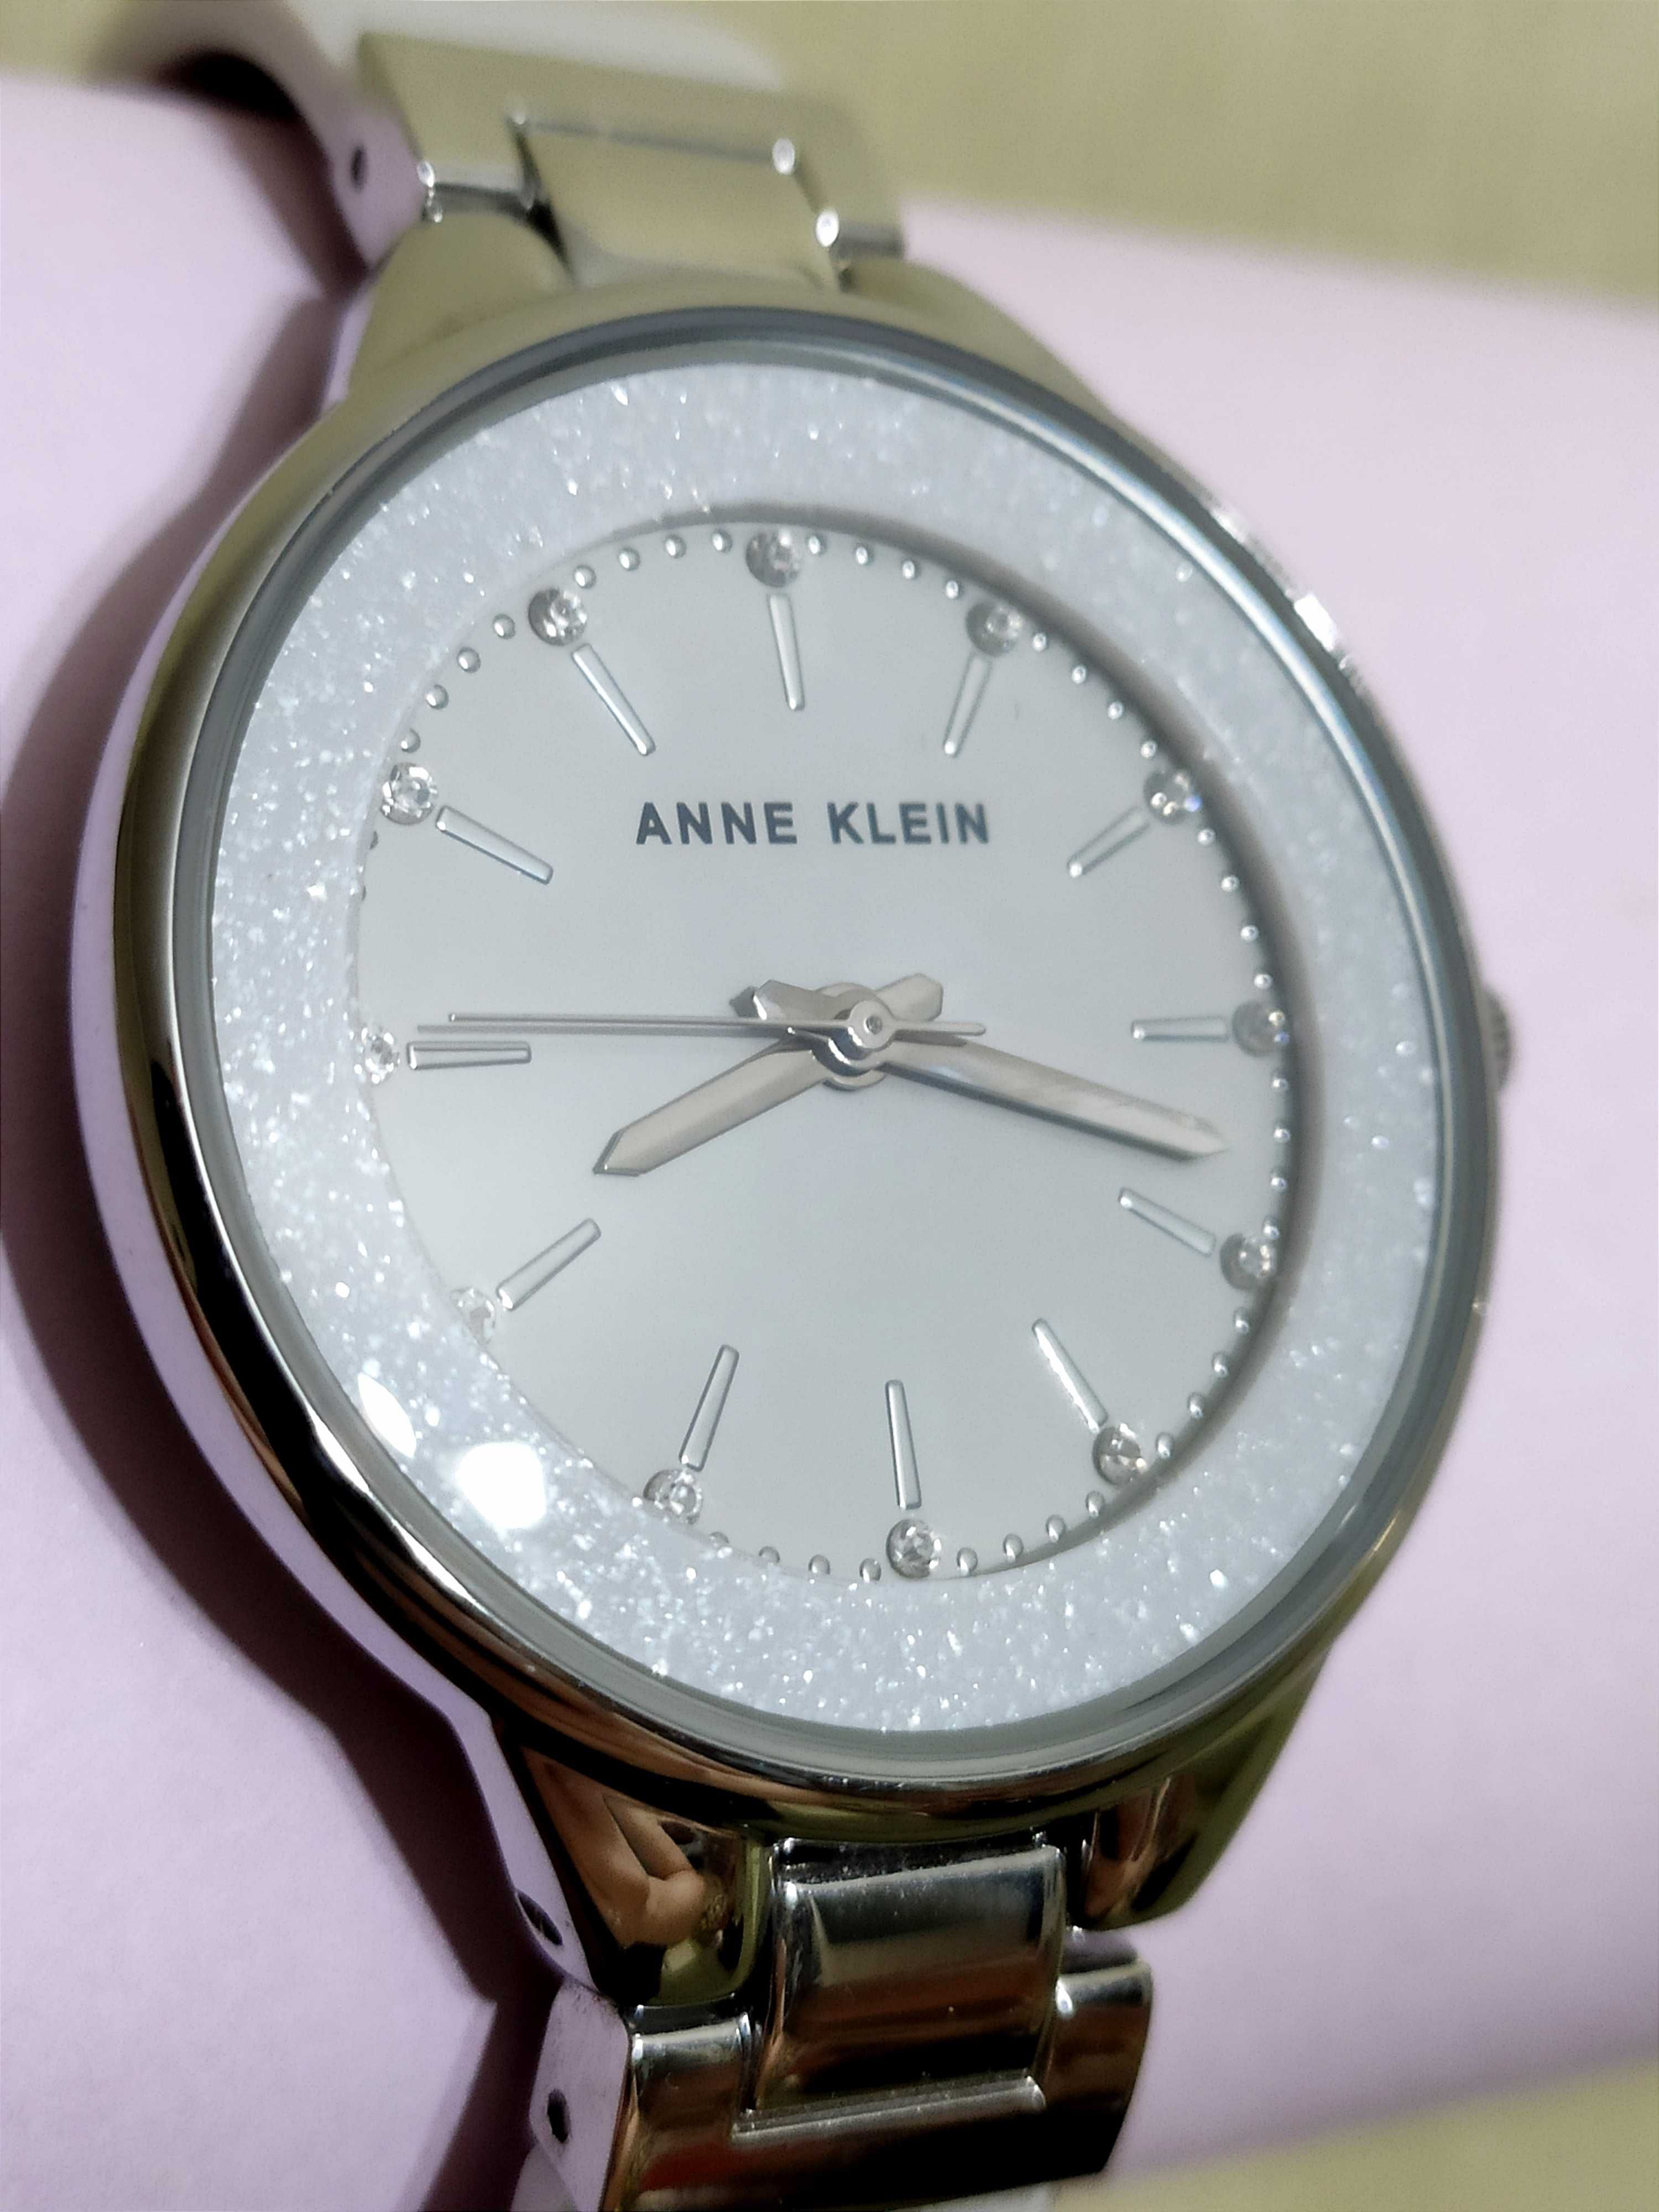 Часы наручные женские Anne Klein. Новые.